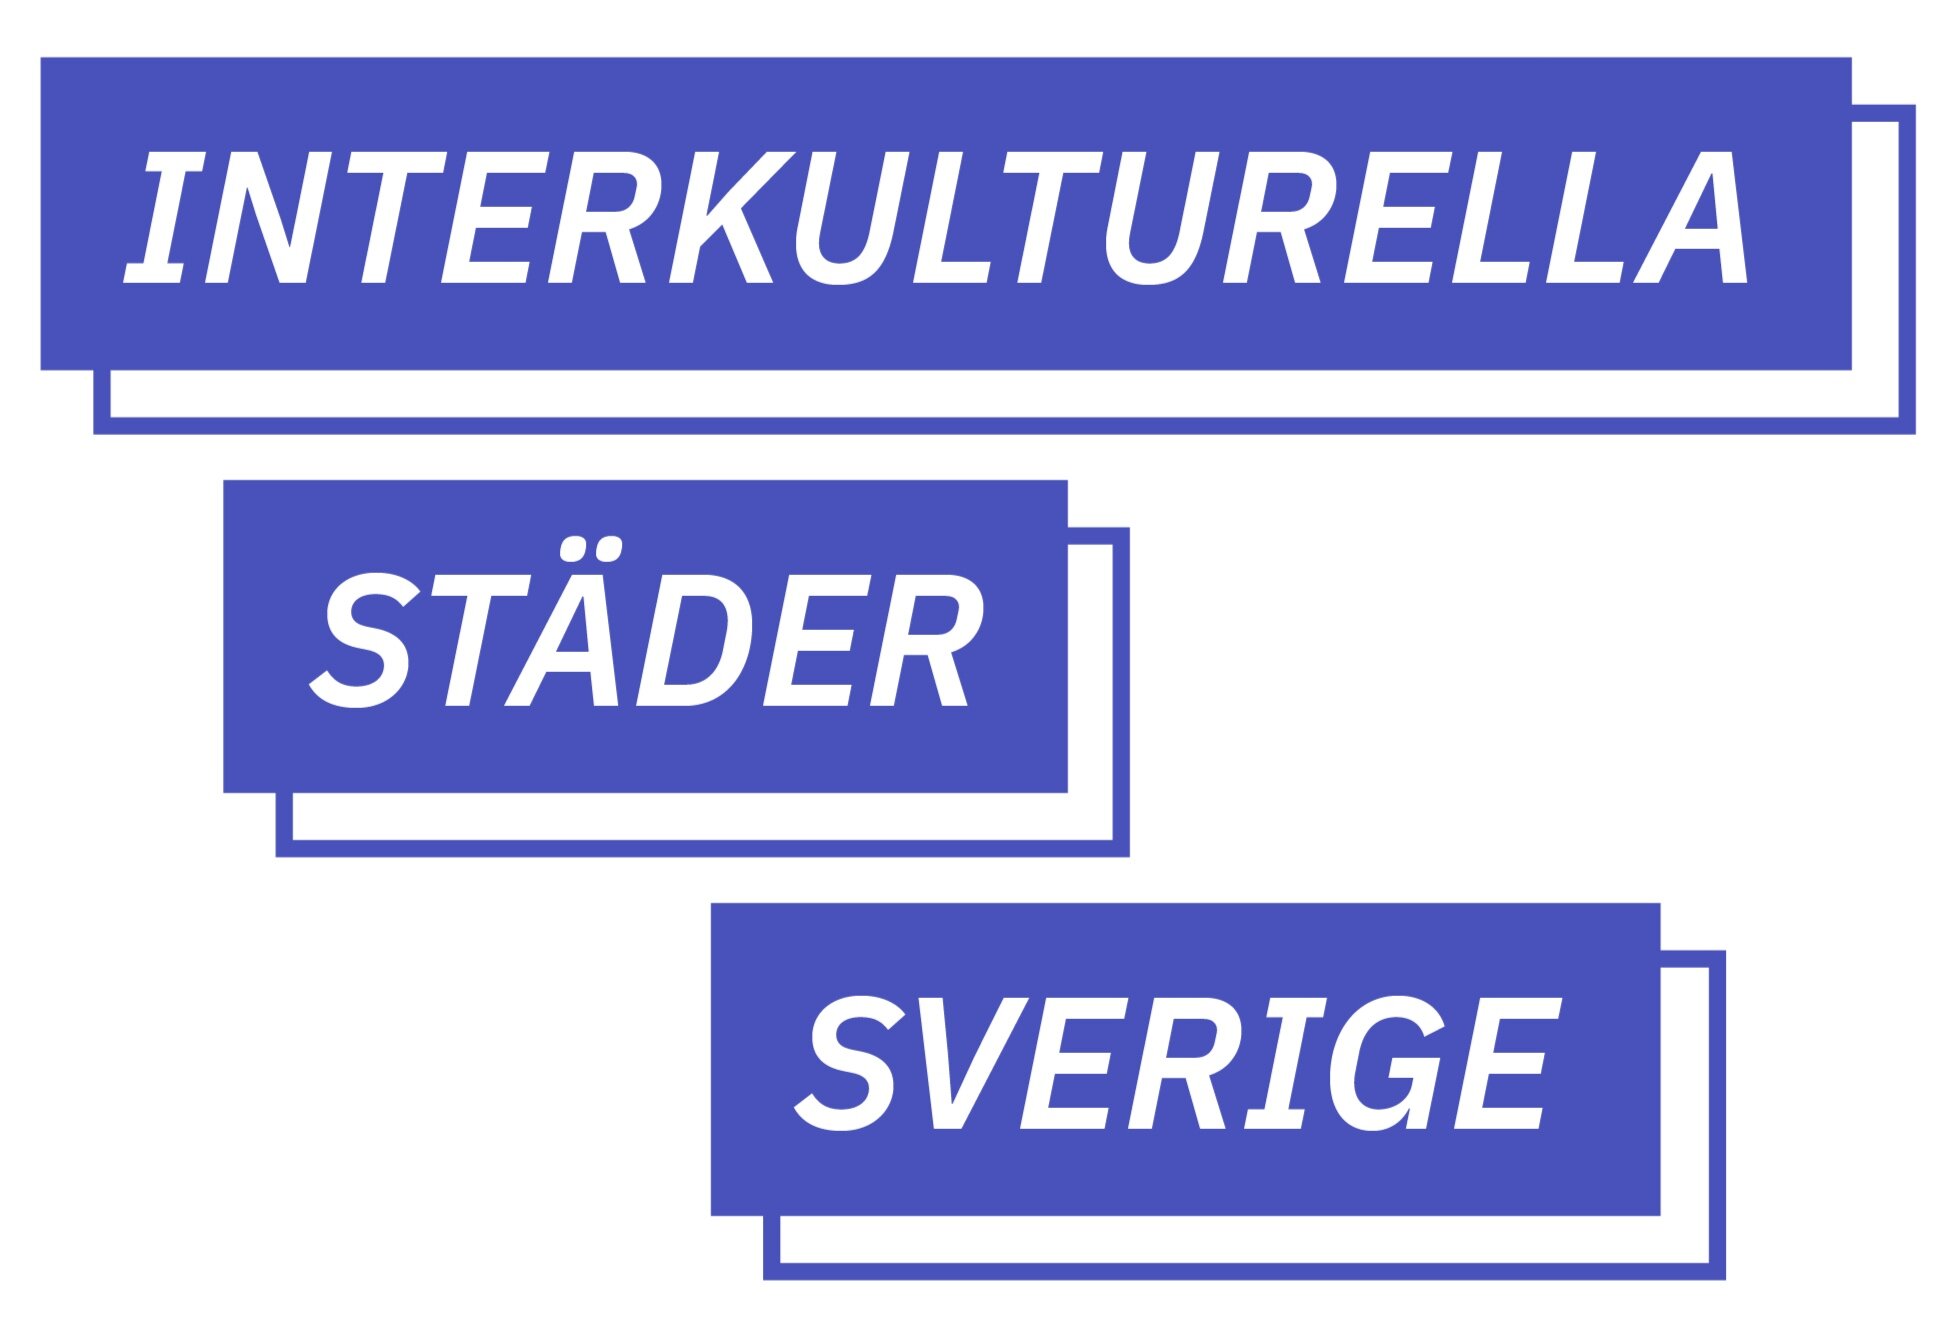 Interkulturella Städer Sverige